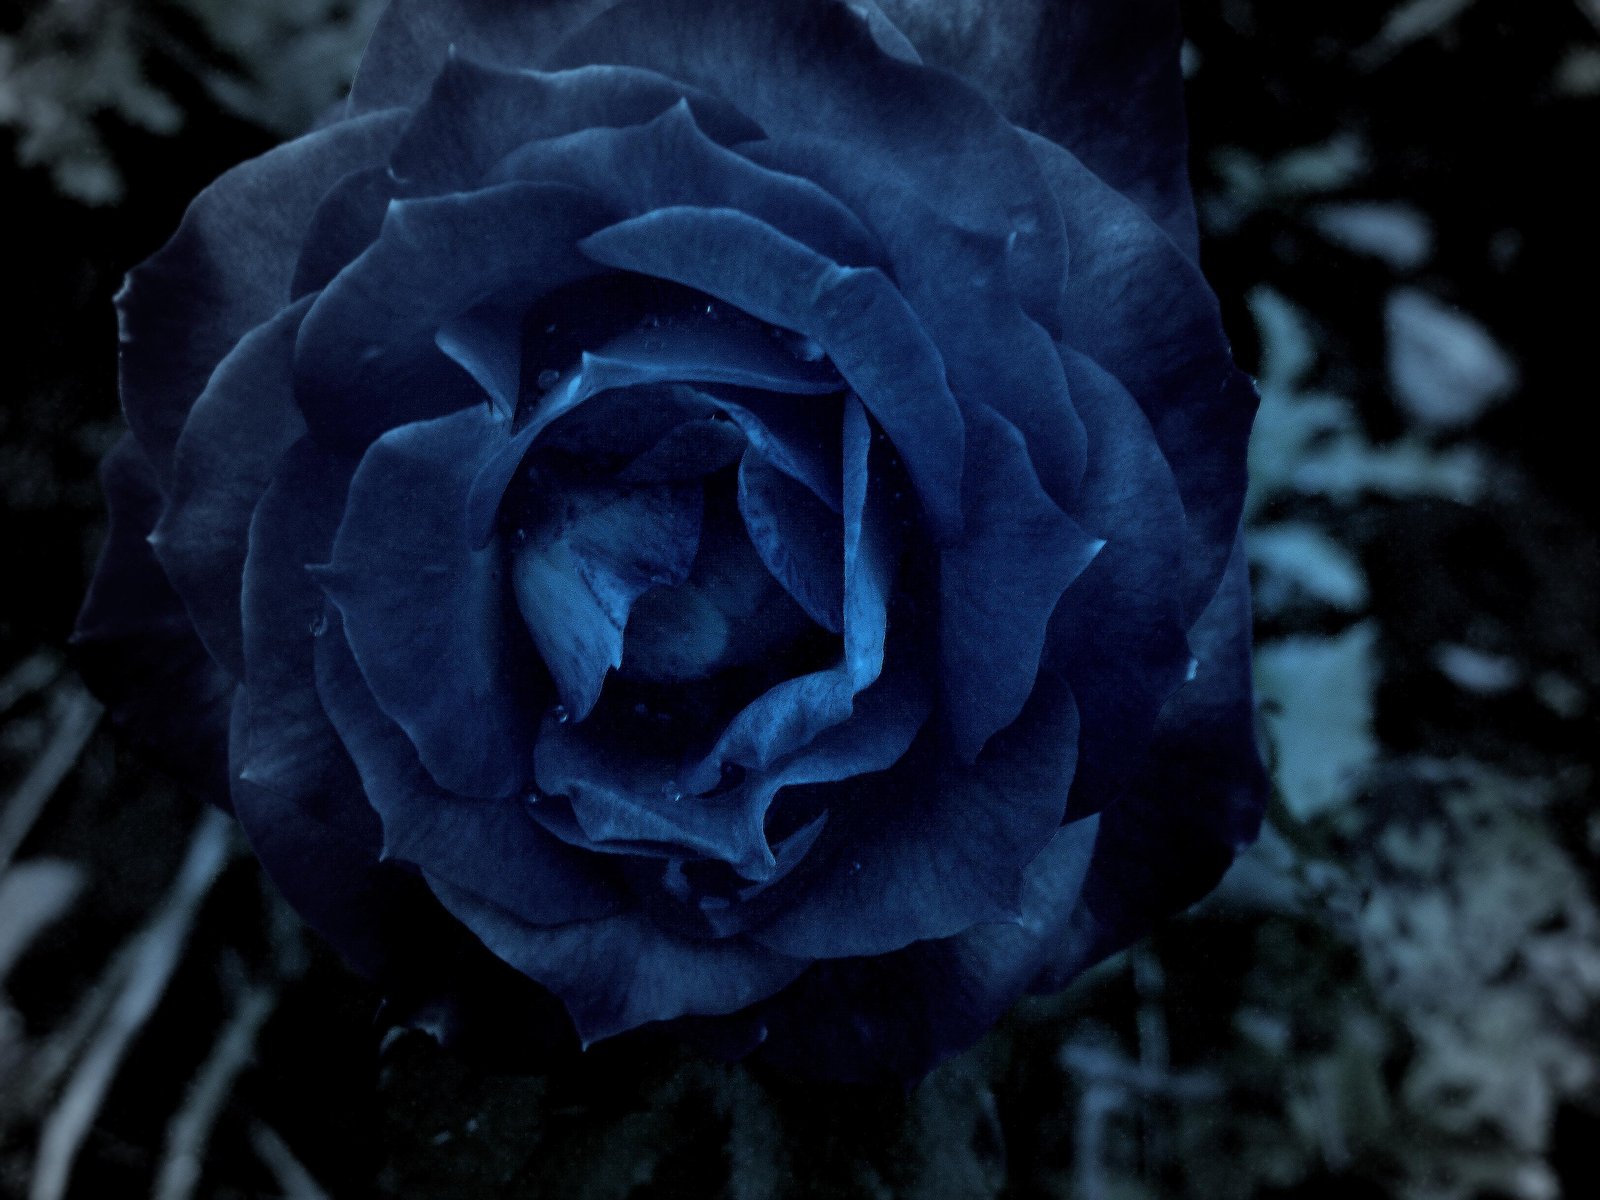 47+] Dark Blue Roses Wallpaper - WallpaperSafari